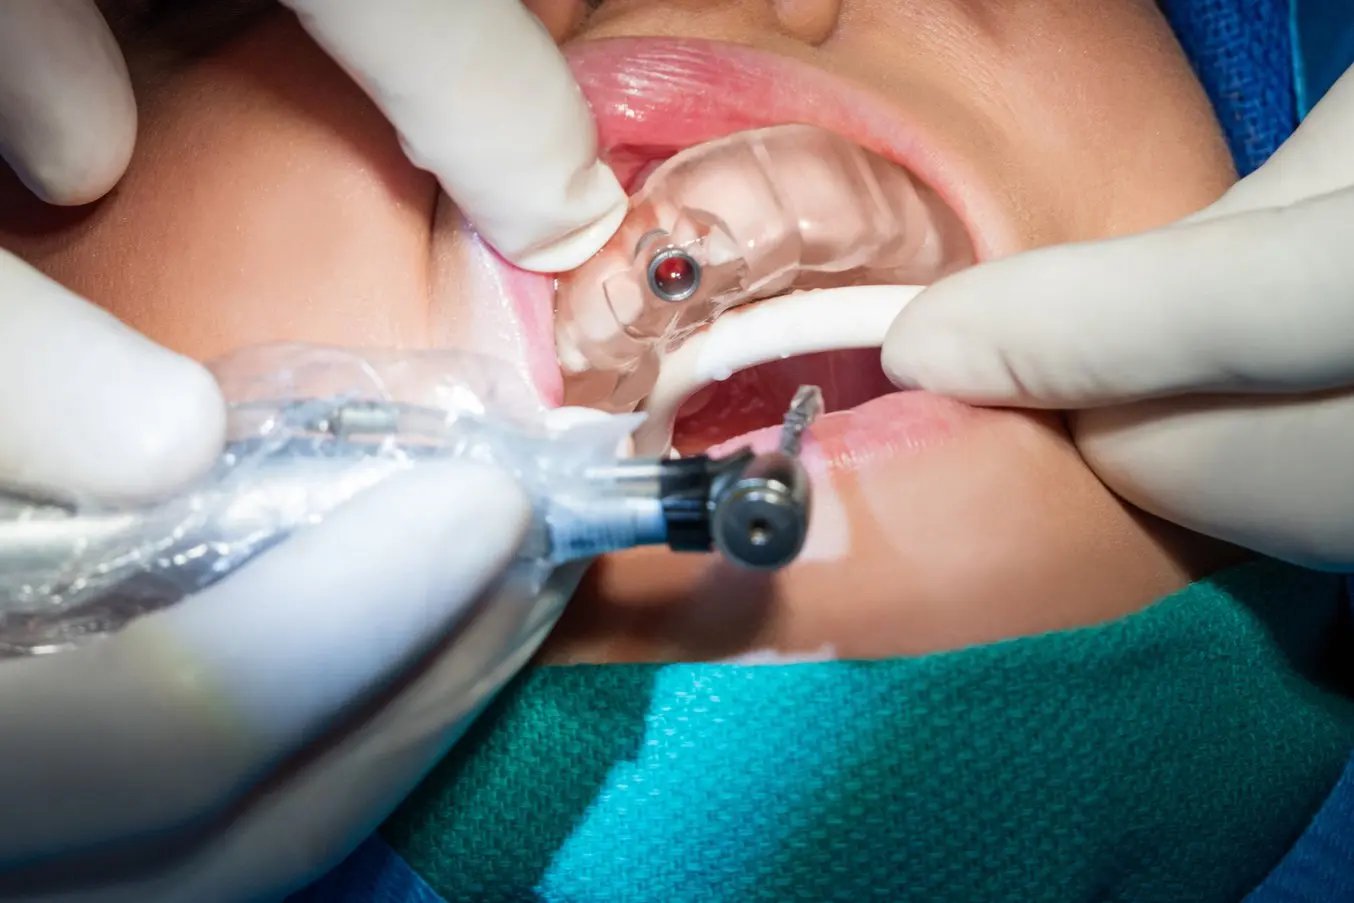 Odontoiatria digitale: prodotti dentali stampati in 3D